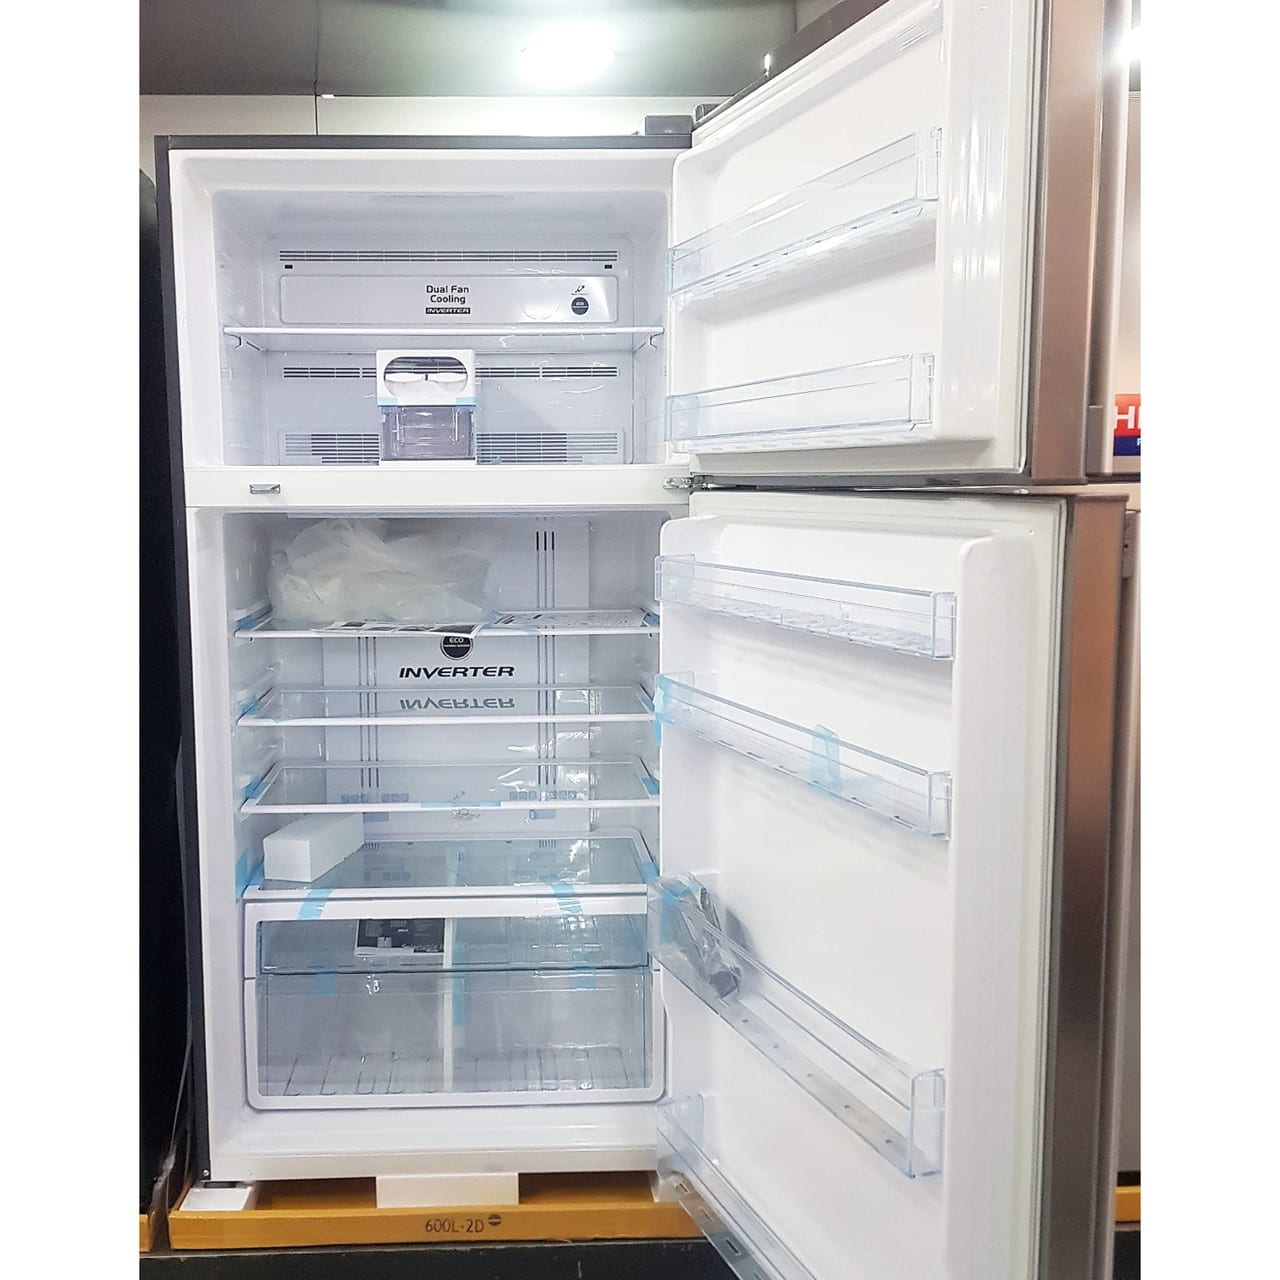 Холодильникх двухкамерный Hitachi 550 литров металлик